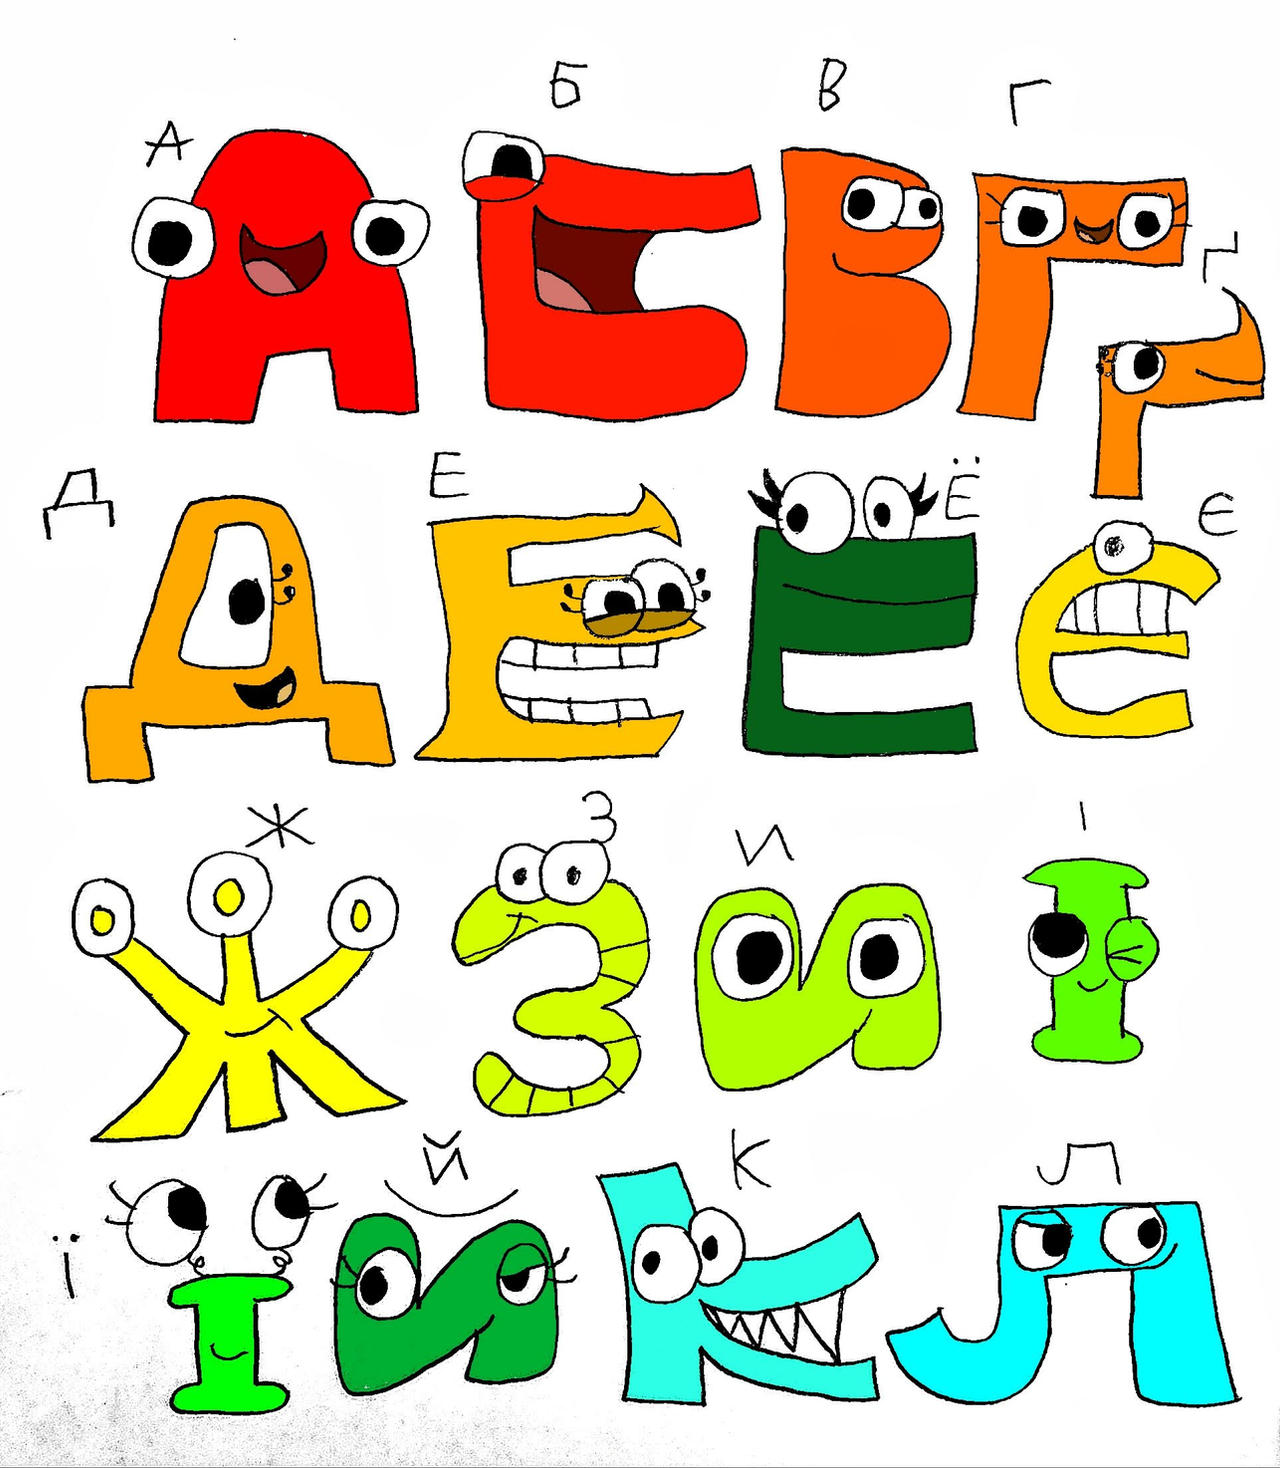 Ukrainian Alphabet Lore A-E